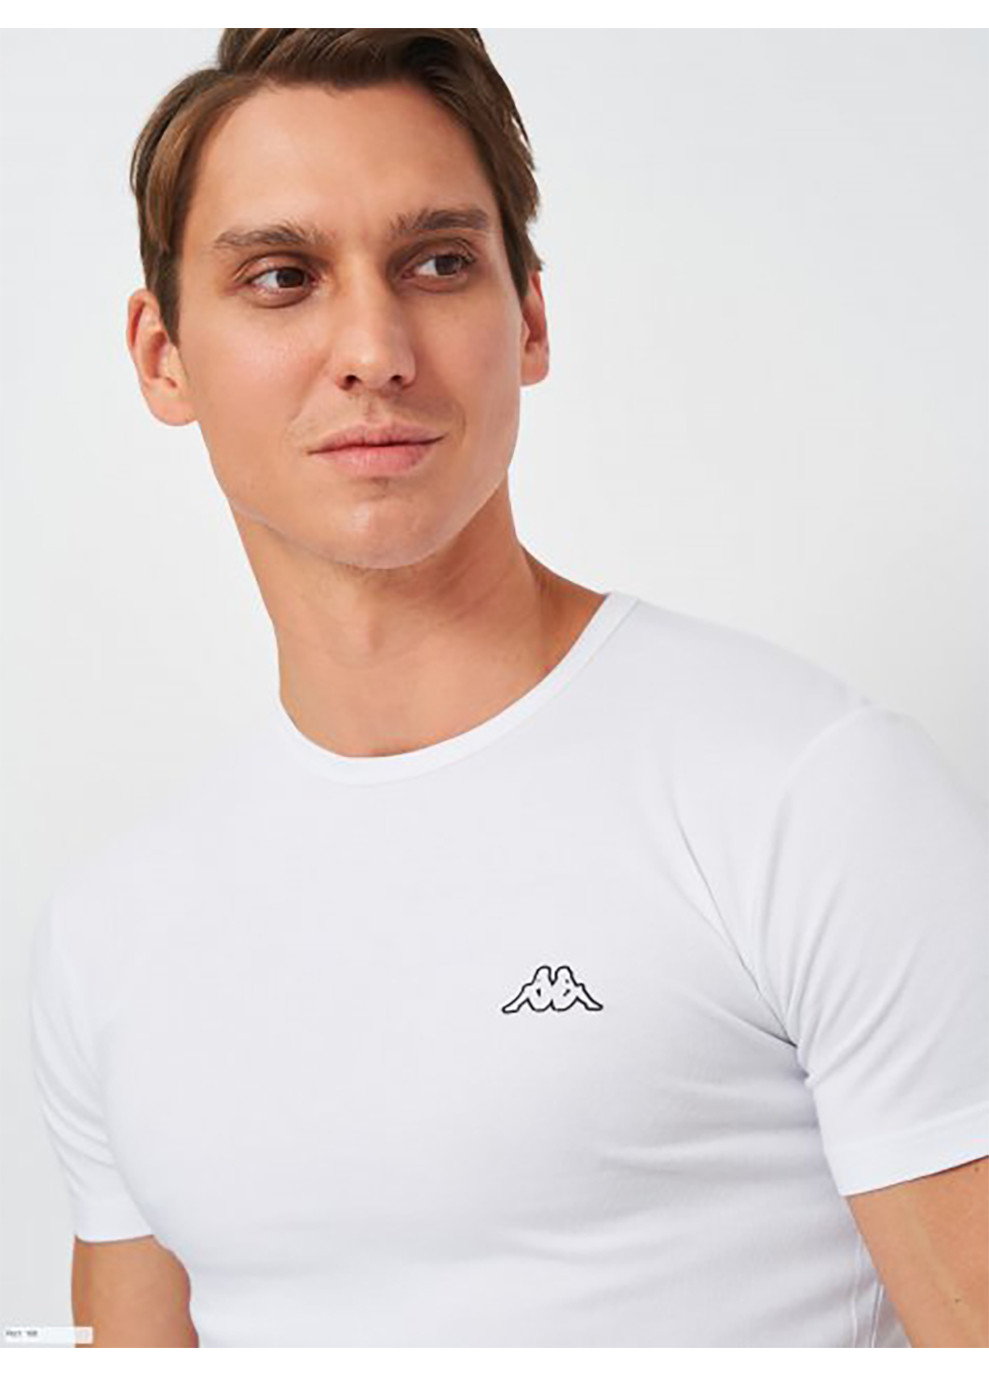 Біла футболка t-shirt mezza manica girocollo білий l чол k1305 bianco-l Kappa